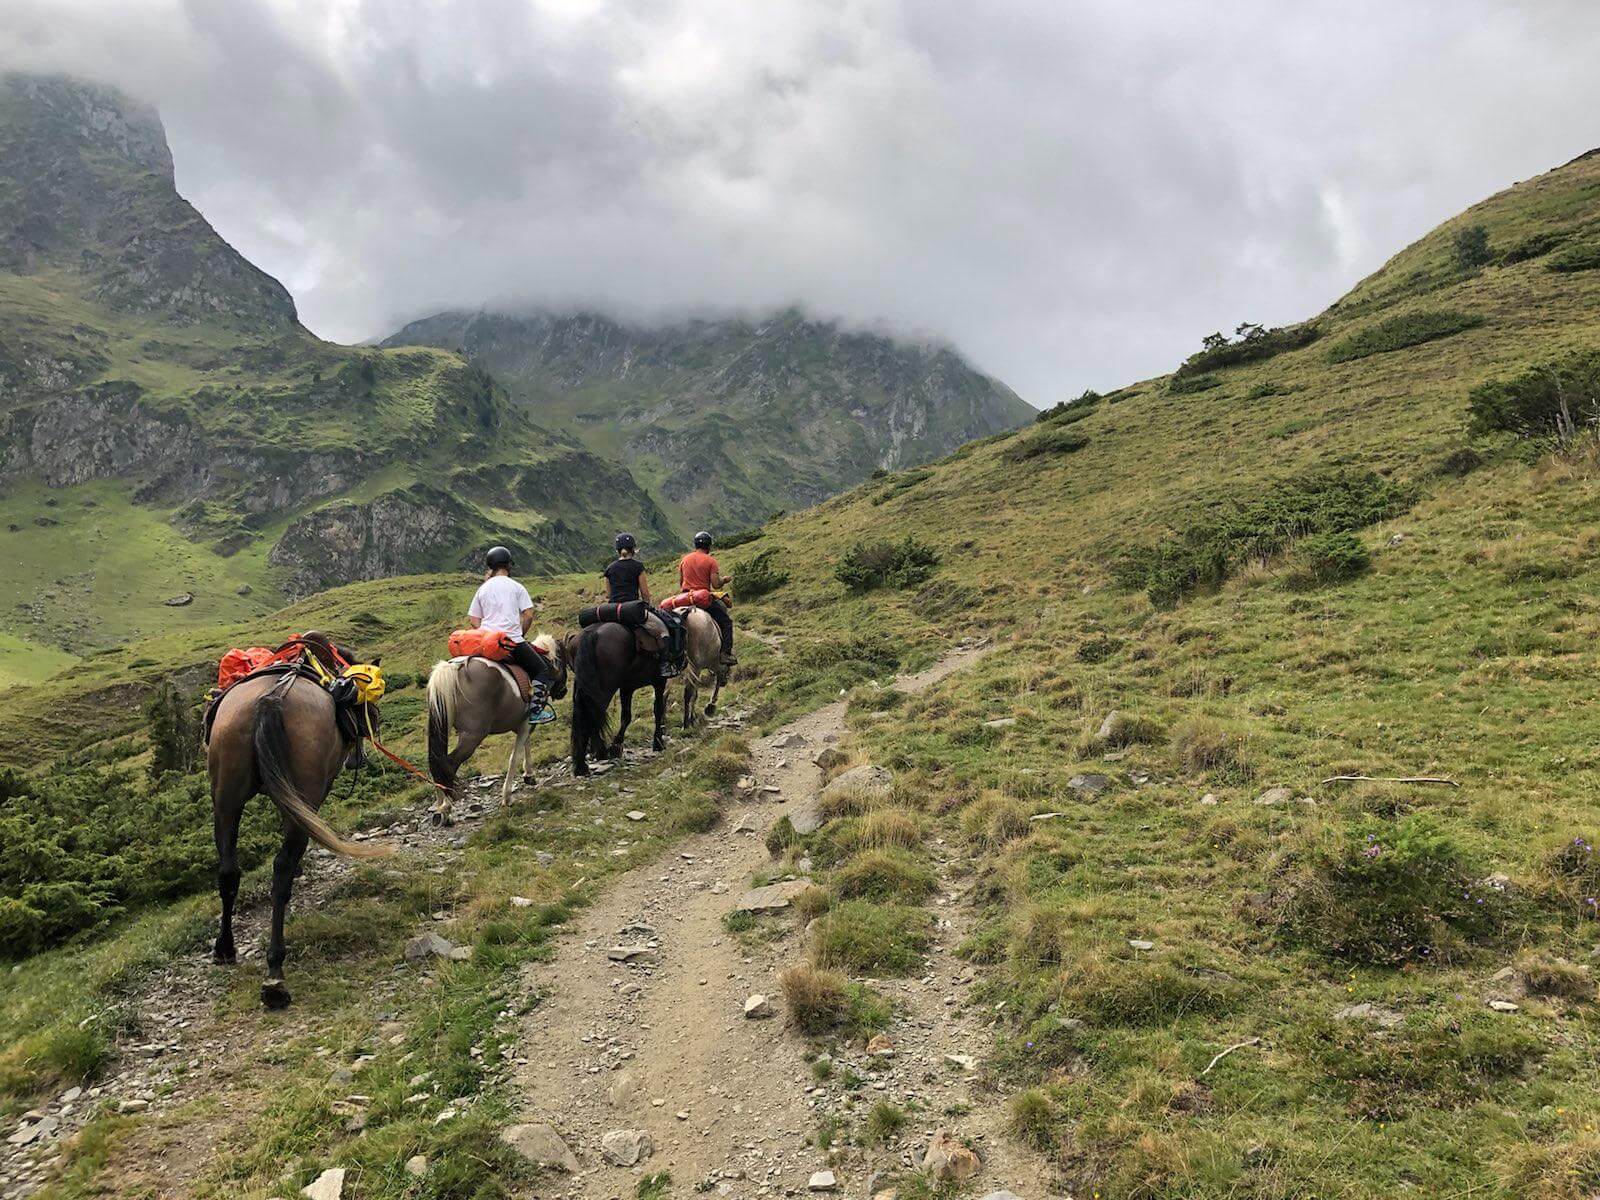 Randonnée à cheval dans les Pyrénées, groupe sous le pic du midi dans les nuages